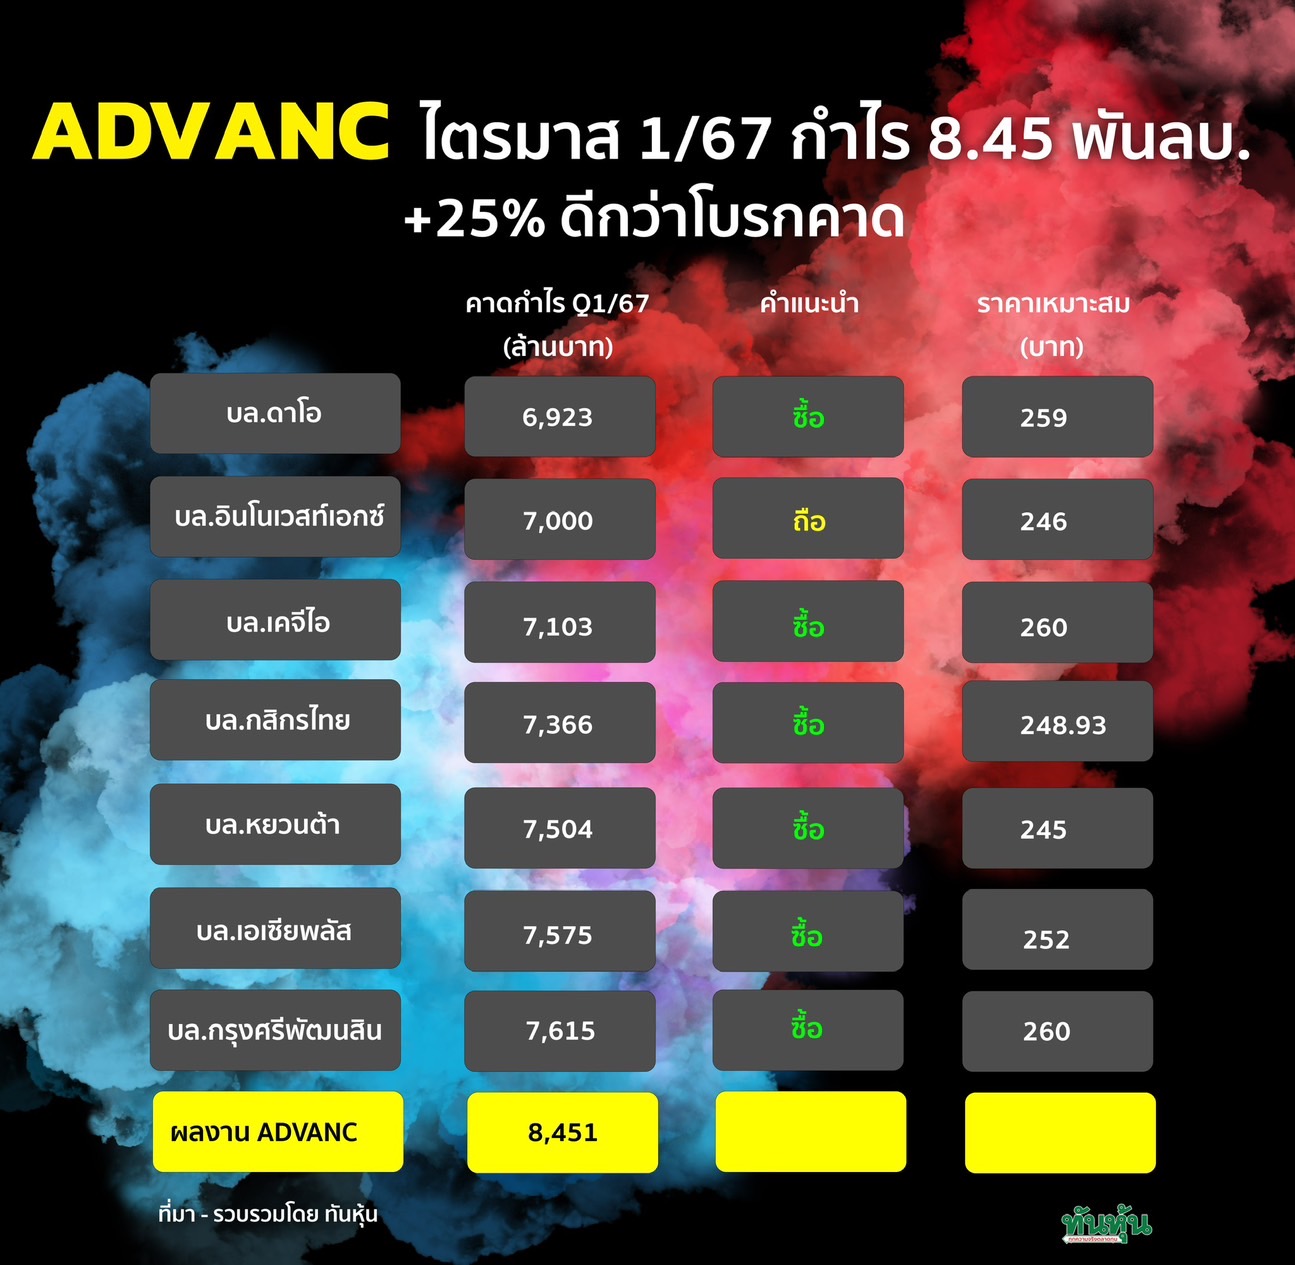 ADVANC ไตรมาส 1/67 กำไร 8.45 พันลบ. +25% ดีกว่าโบรกคาด